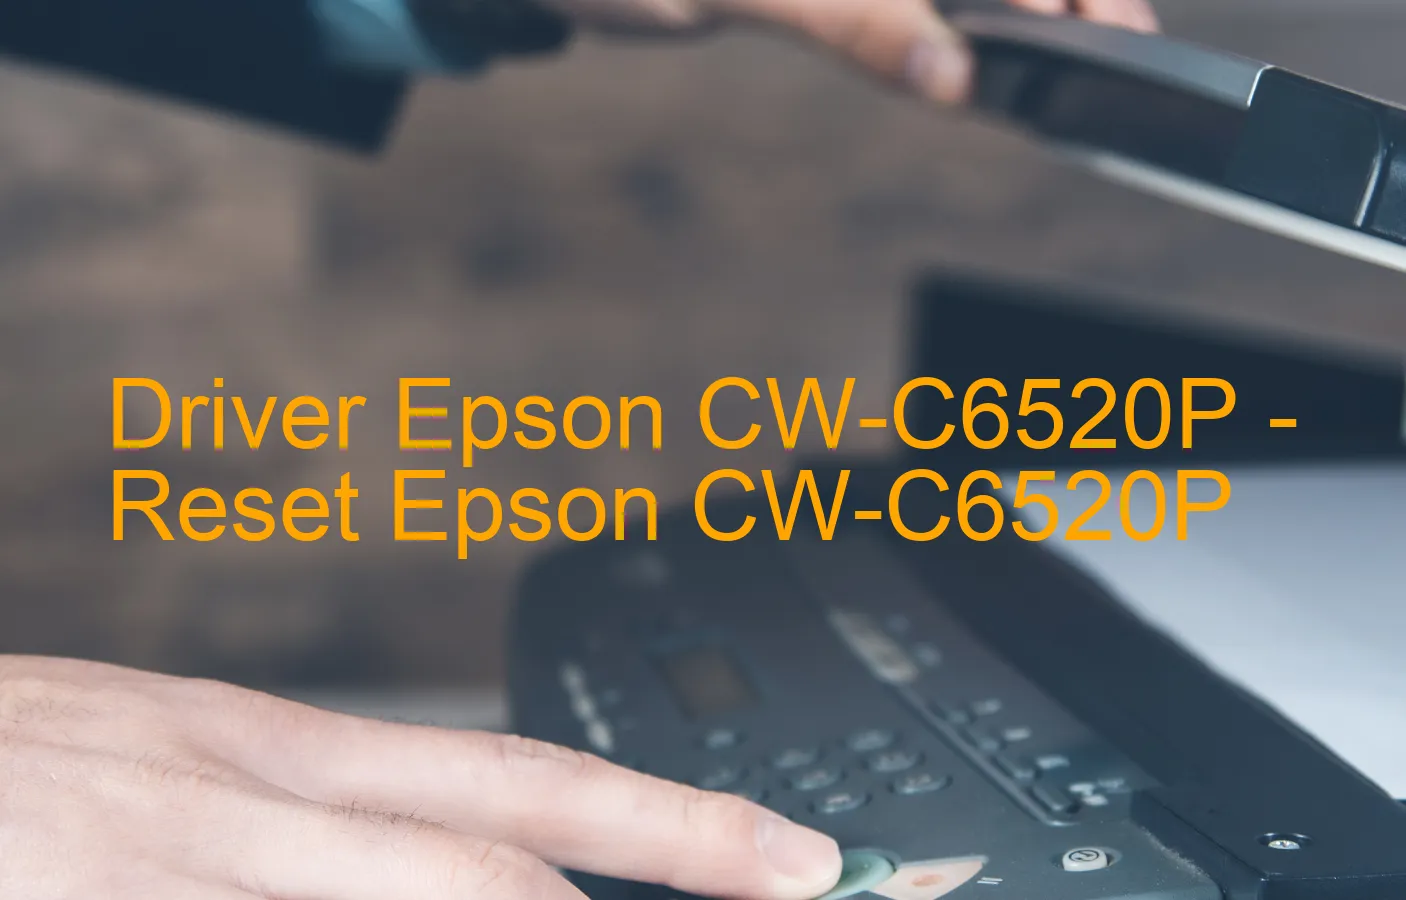 Epson CW-C6520Pのドライバー、Epson CW-C6520Pのリセットソフトウェア